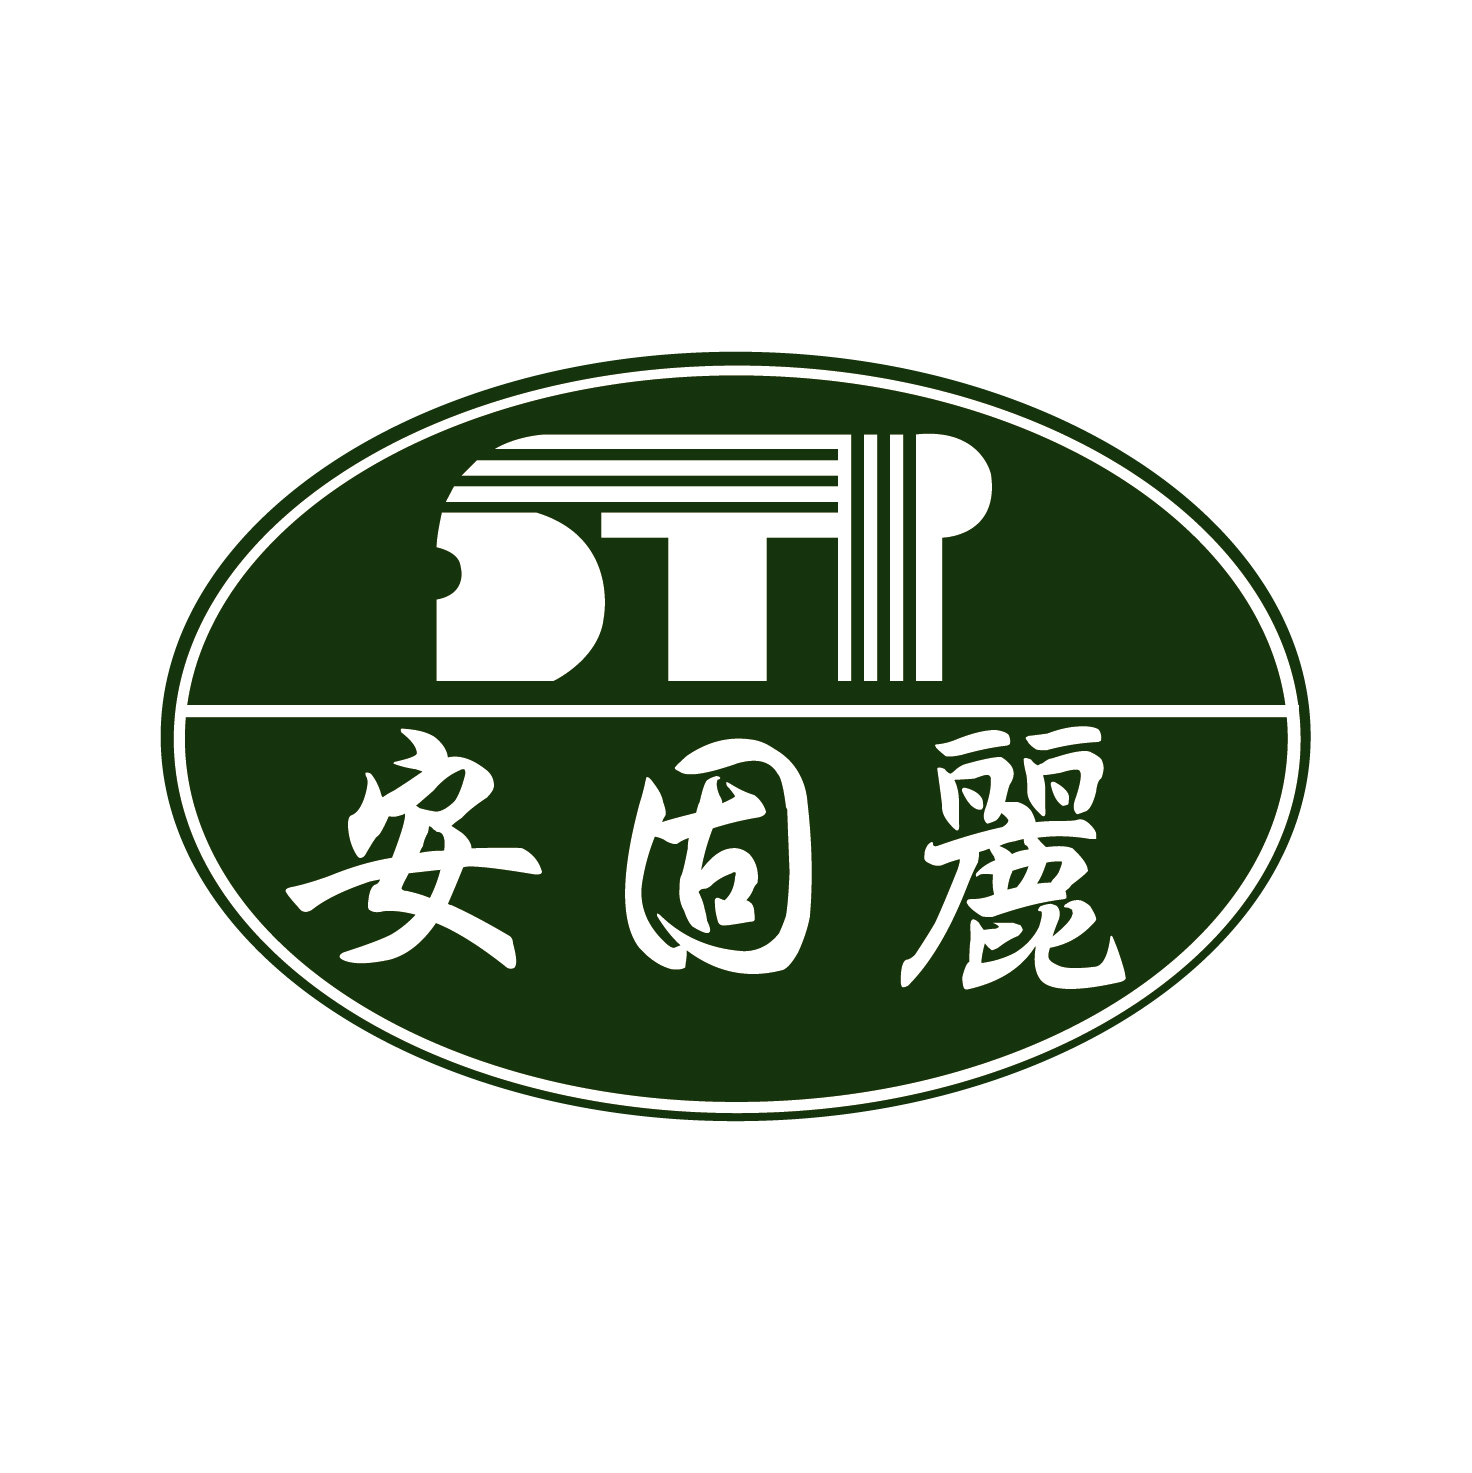 STP INDUSTRY CO.,LTD.-Logo